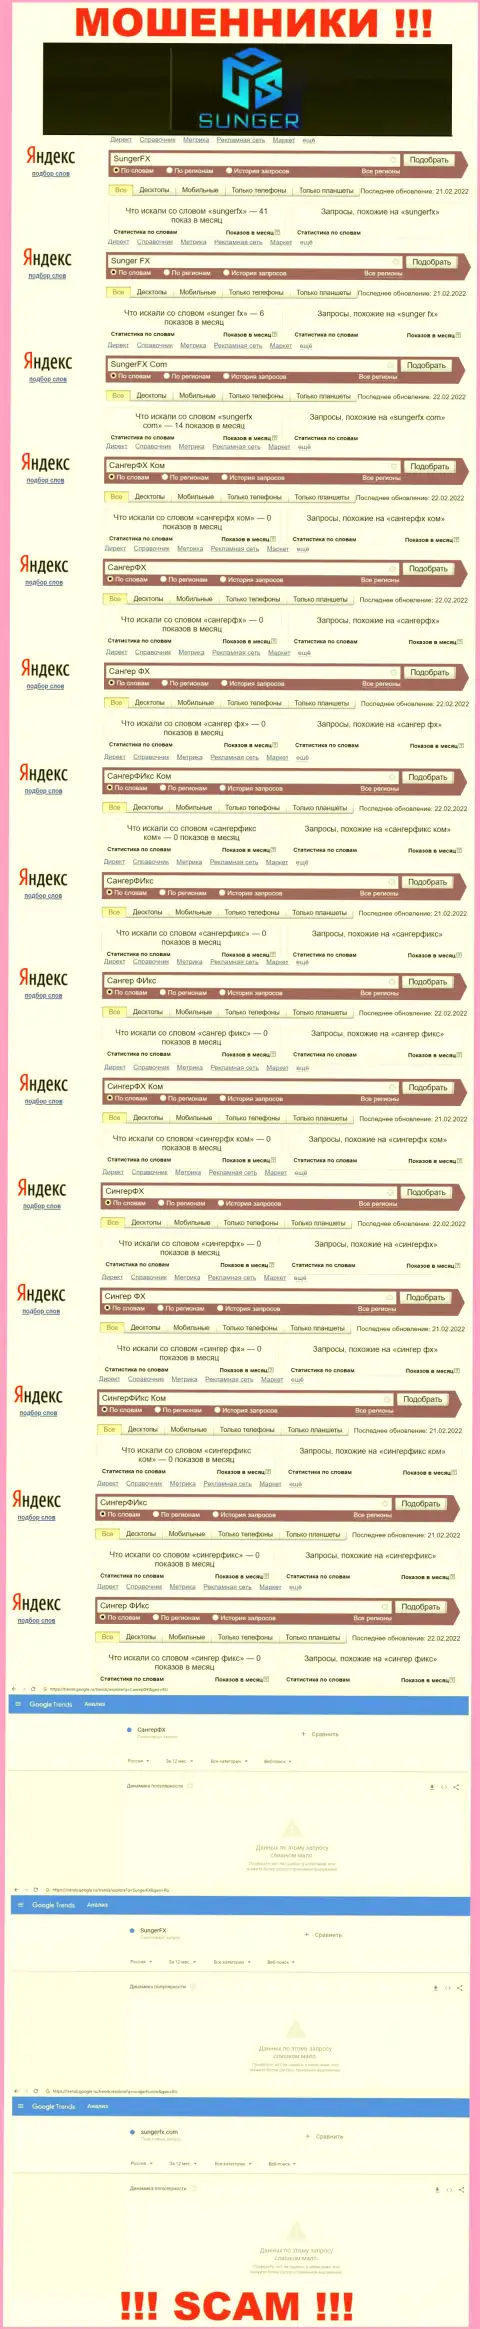 SungerFX - МОШЕННИКИ, сколько именно раз искали в поисковиках всемирной сети указанную организацию